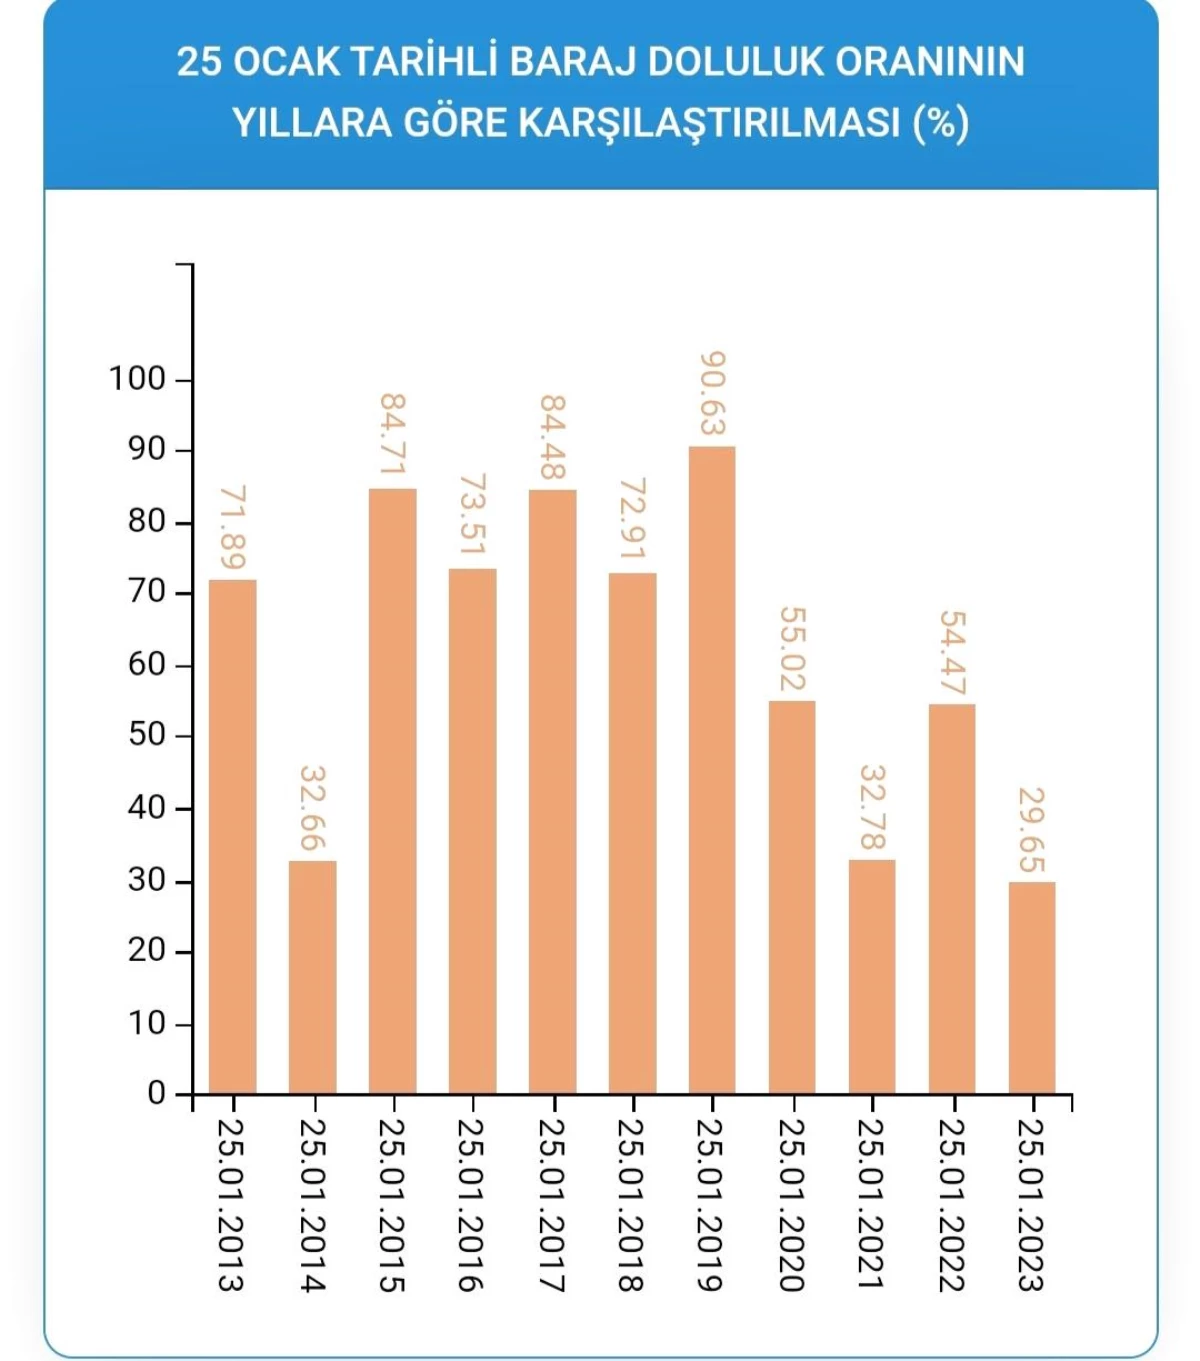 İstanbul'da barajlar son 10 yılın en düşük seviyesinde